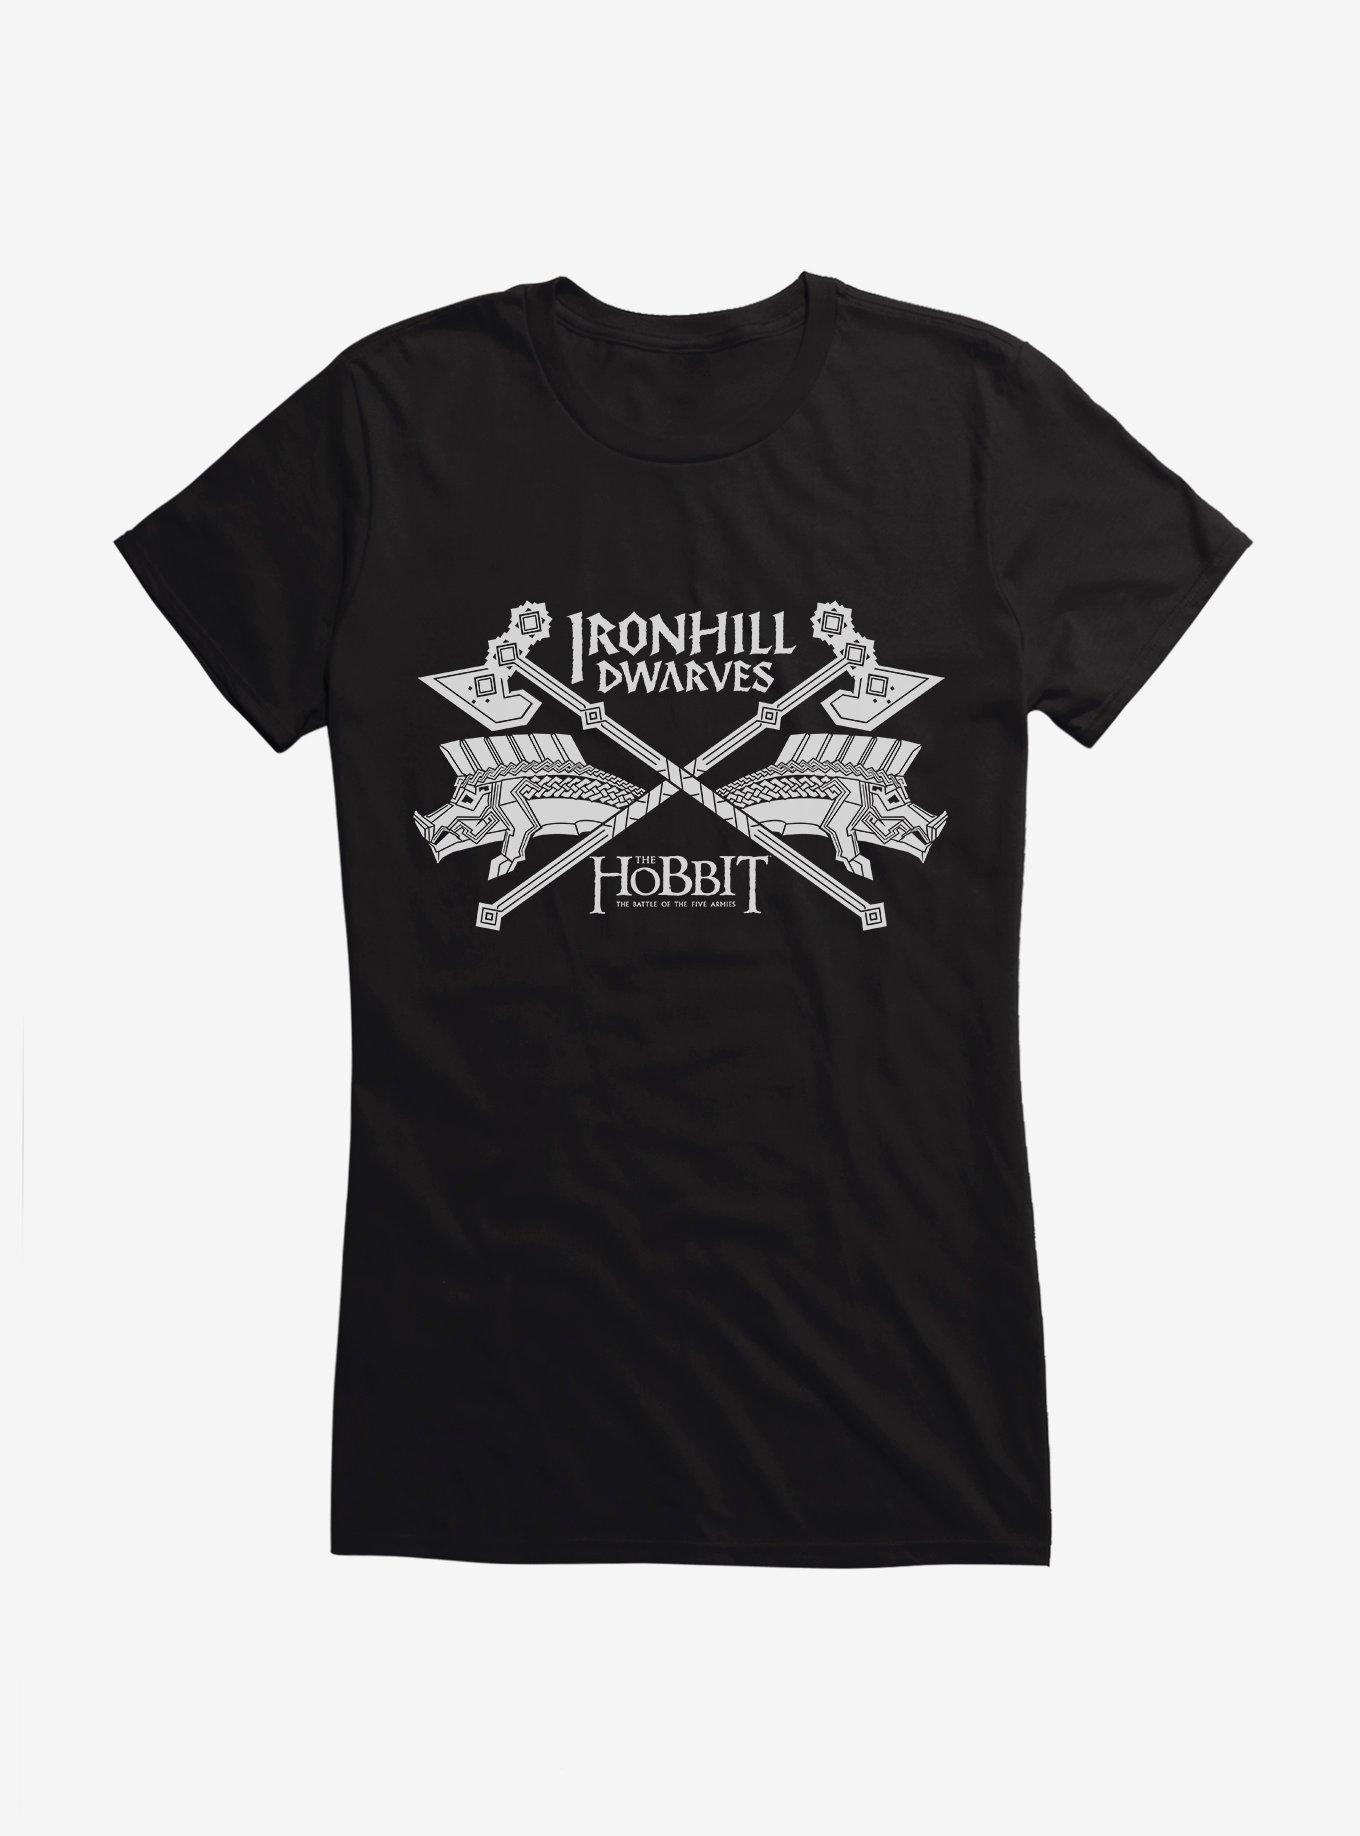 The Hobbit: Battle Of Five Armies Iron Hill Dwarves Girls T-Shirt